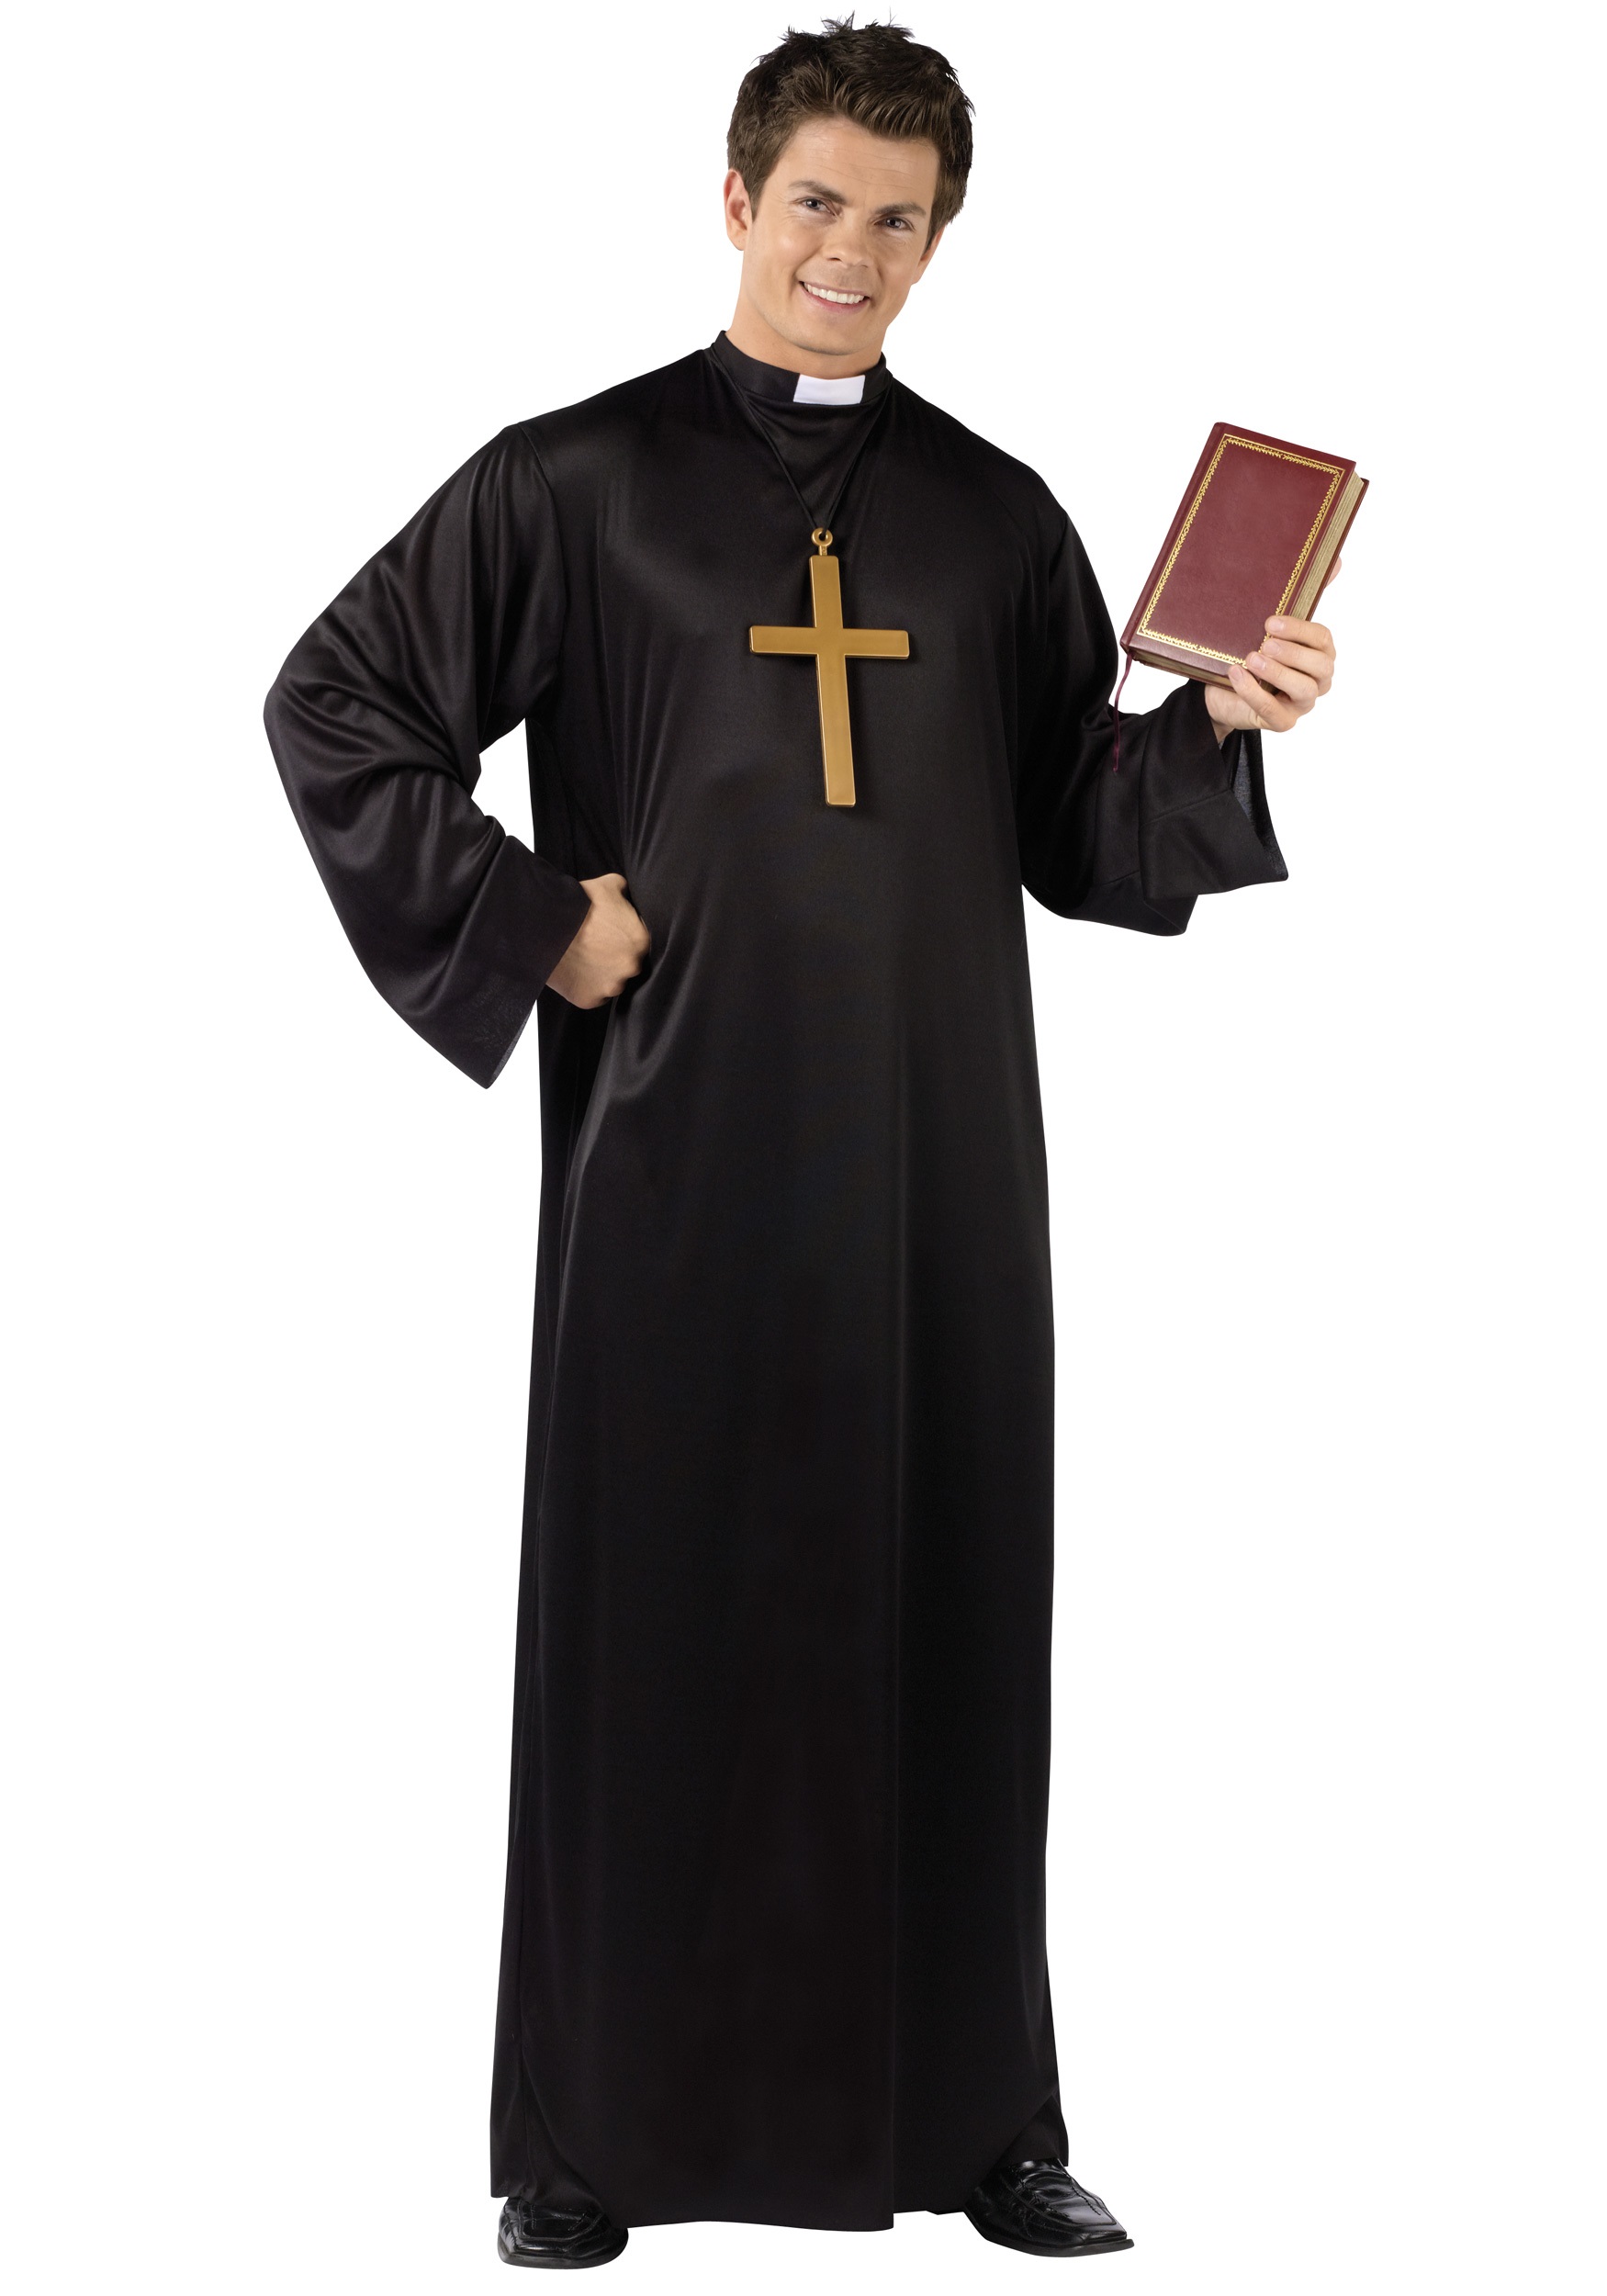 Priest Halloween Costume For Men